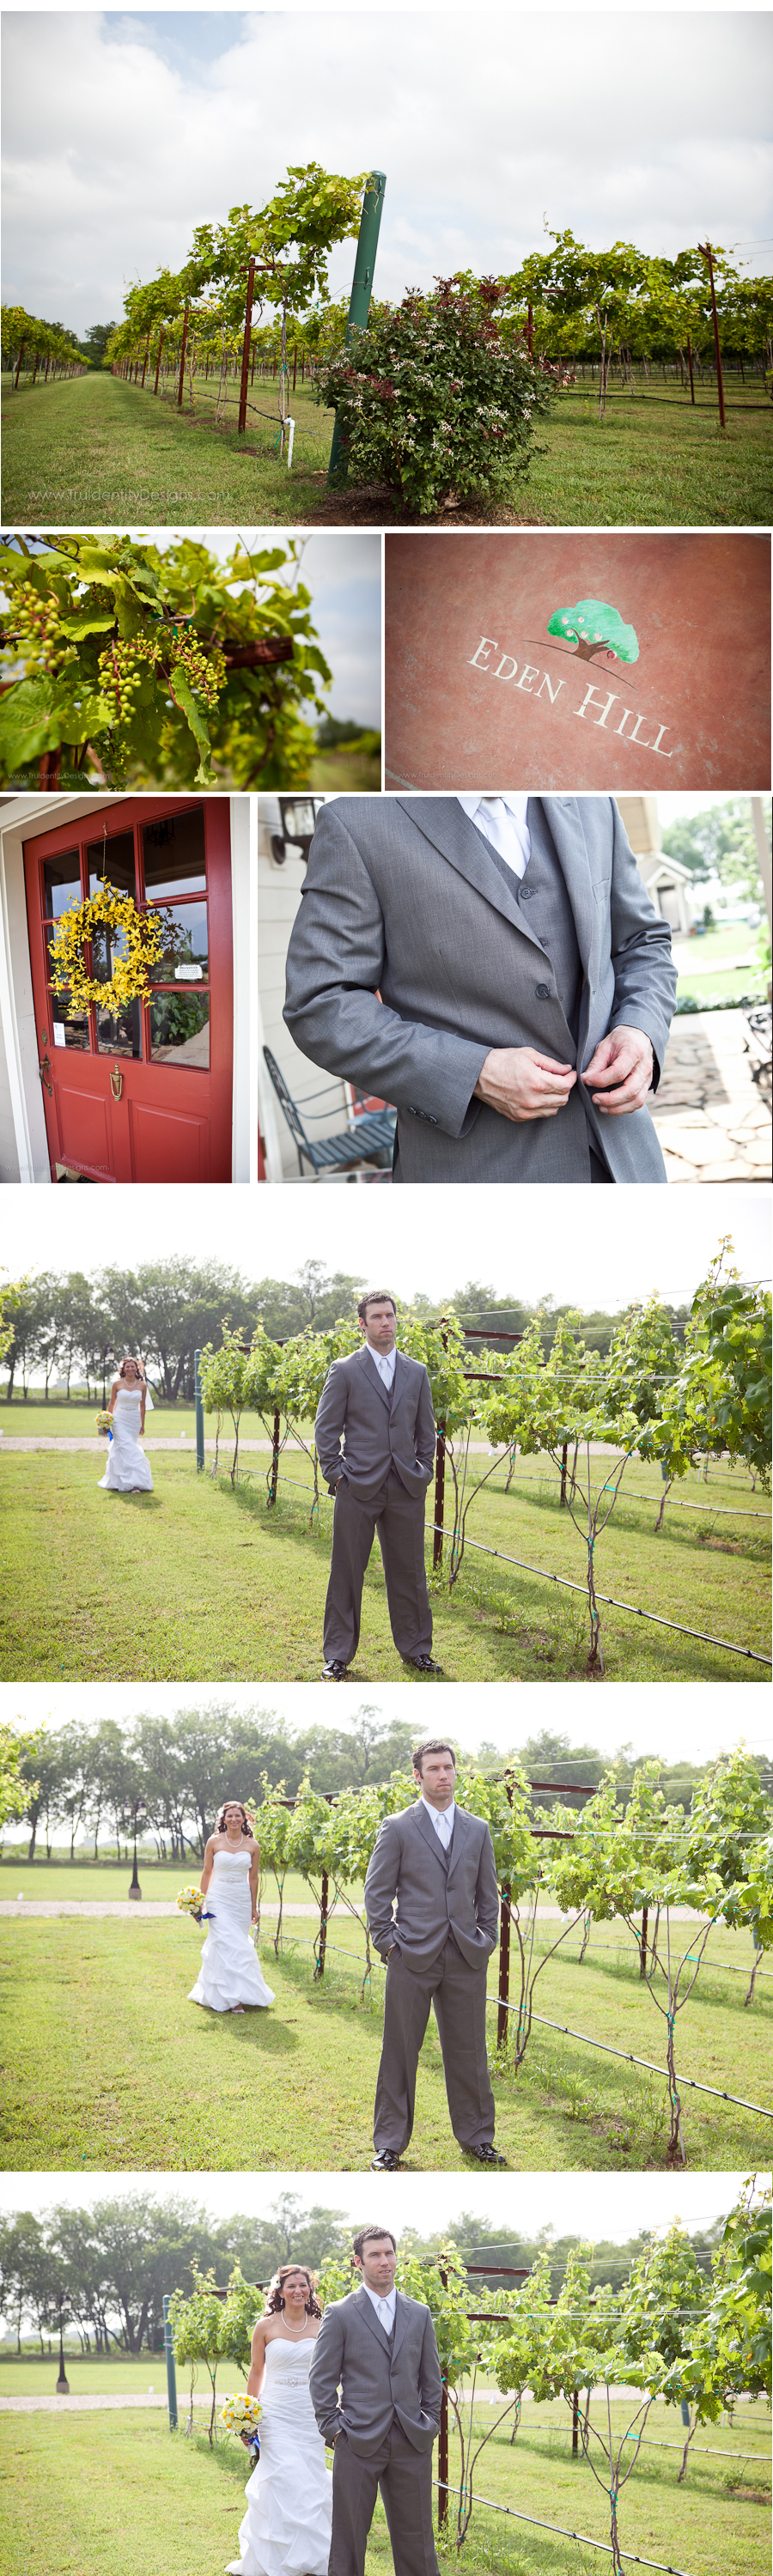 Eden Hill Farms Vineyard wedding Celina texas